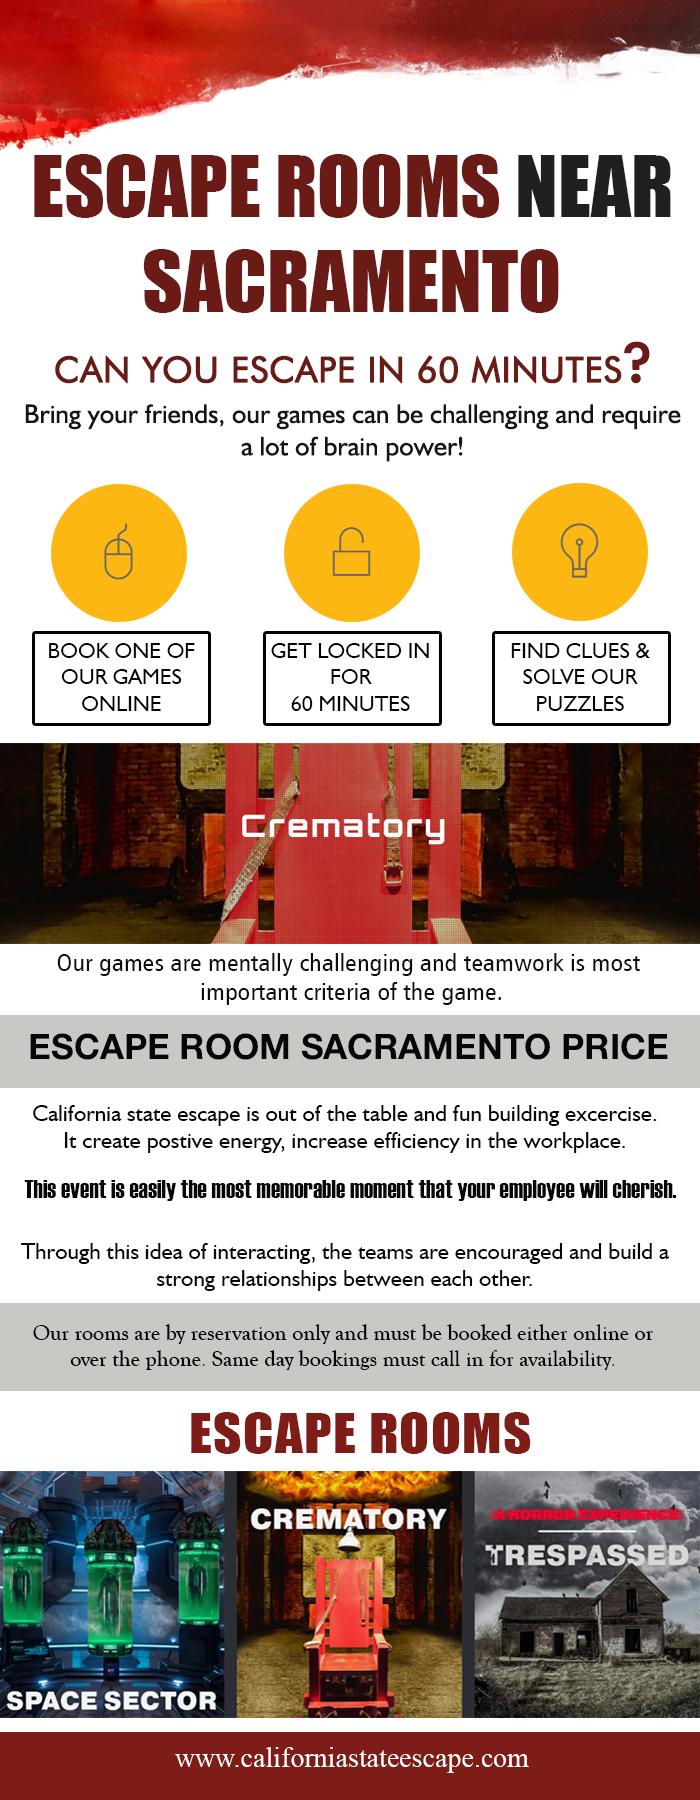 Escape Rooms Near Sacramento